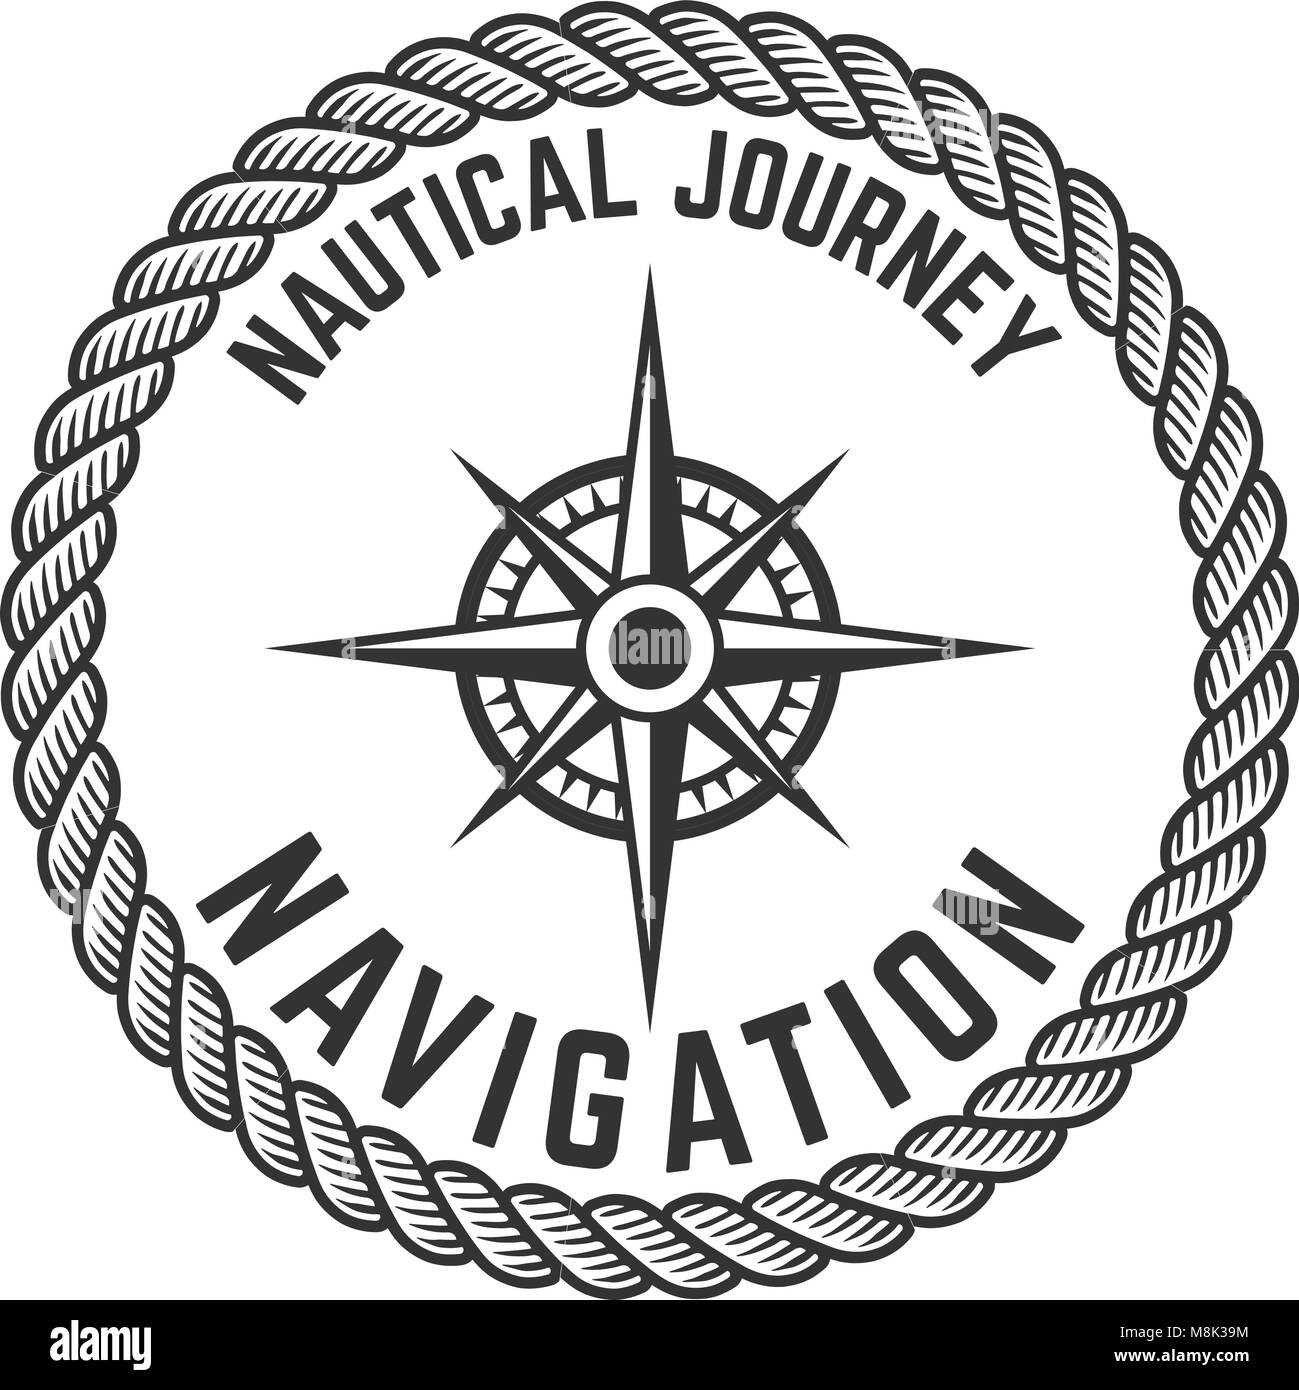 Nautical journey. Emblem with Rose of Wind. Design element for logo, label, emblem, sign, badge. Vector illustration Stock Vector